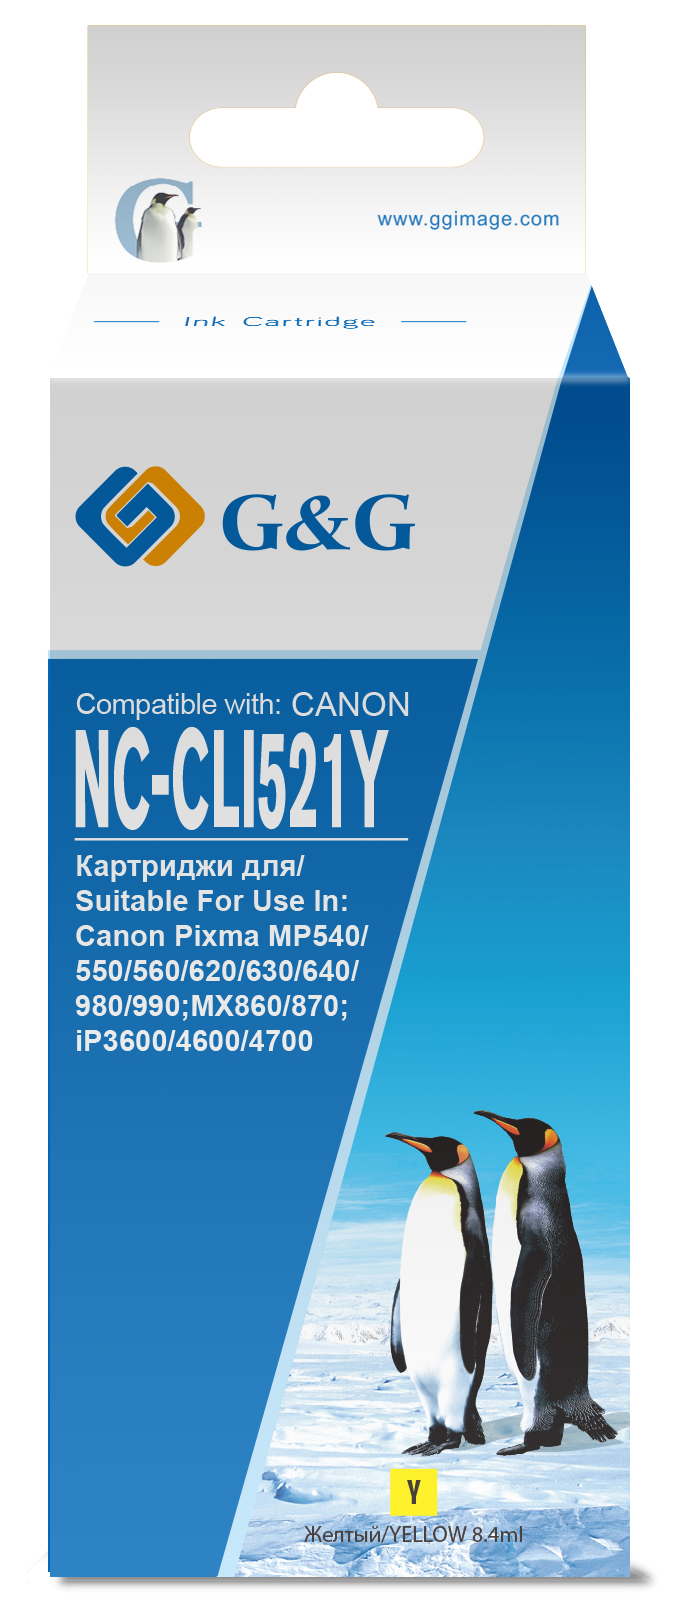 nc-cli521y_1